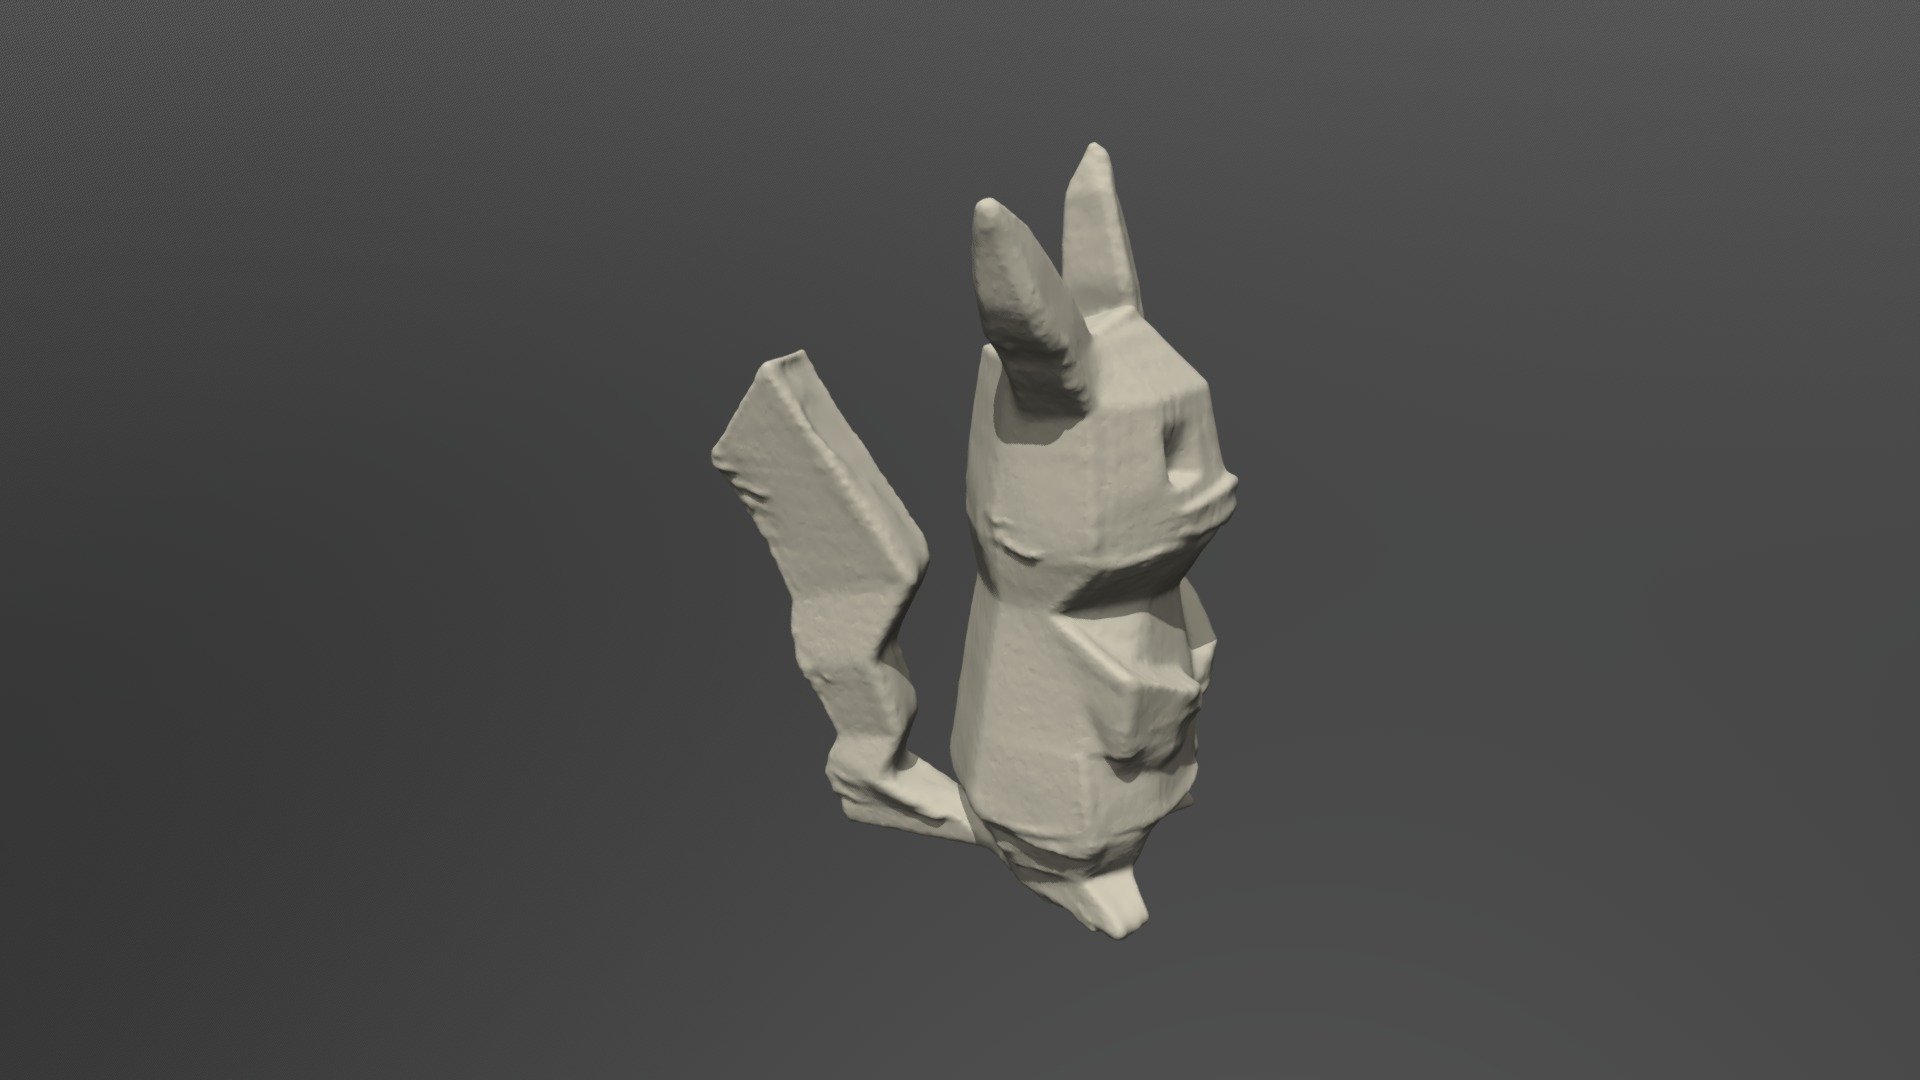 Pikachu - 3D model by adirelharar [46b84c4] - Sketchfab